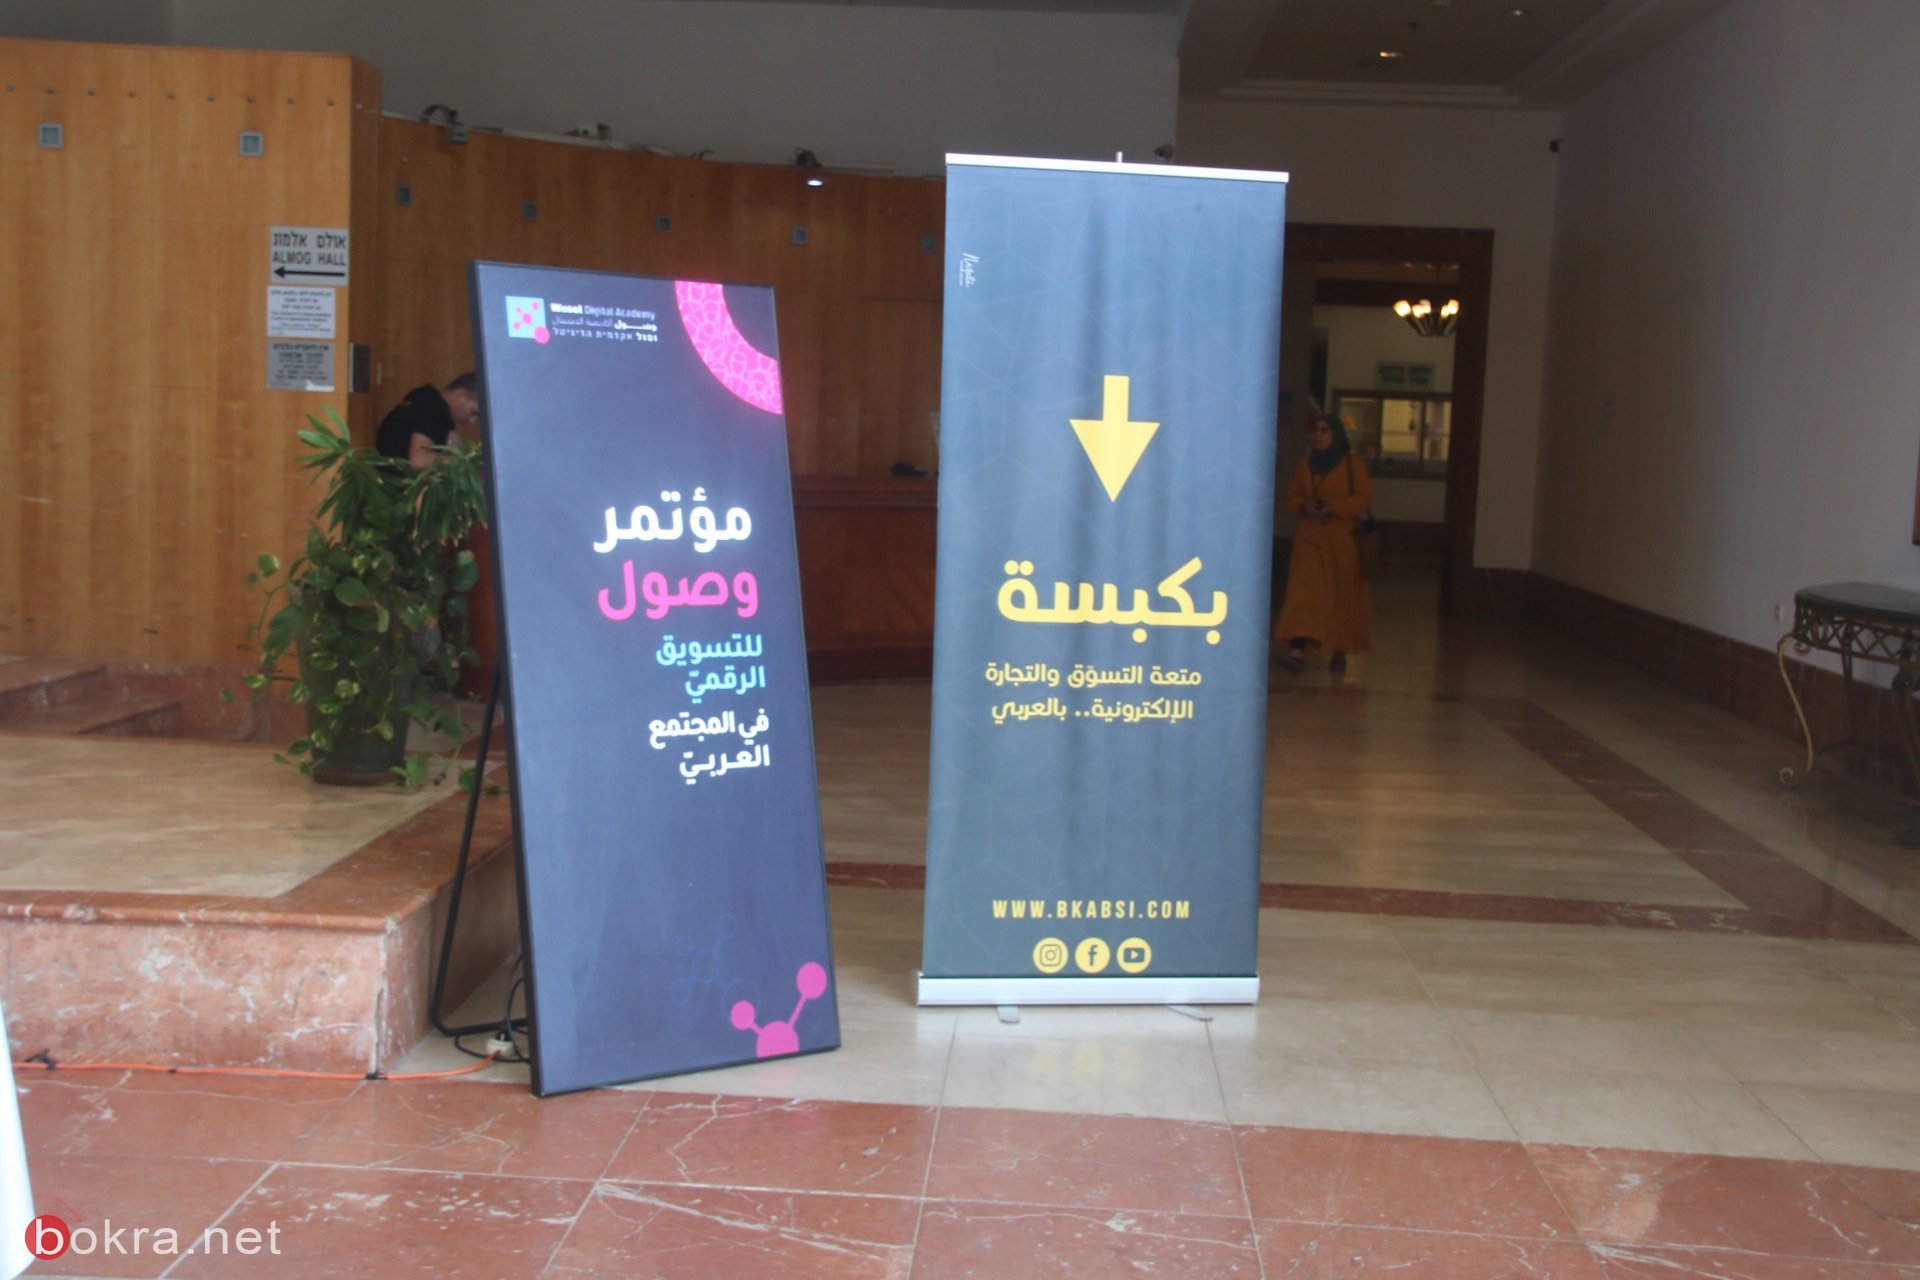 حيفا: مشاركة واسعة في مؤتمر "وصول" حول آخر التطورات في قنوات التسويق الرقمي-36